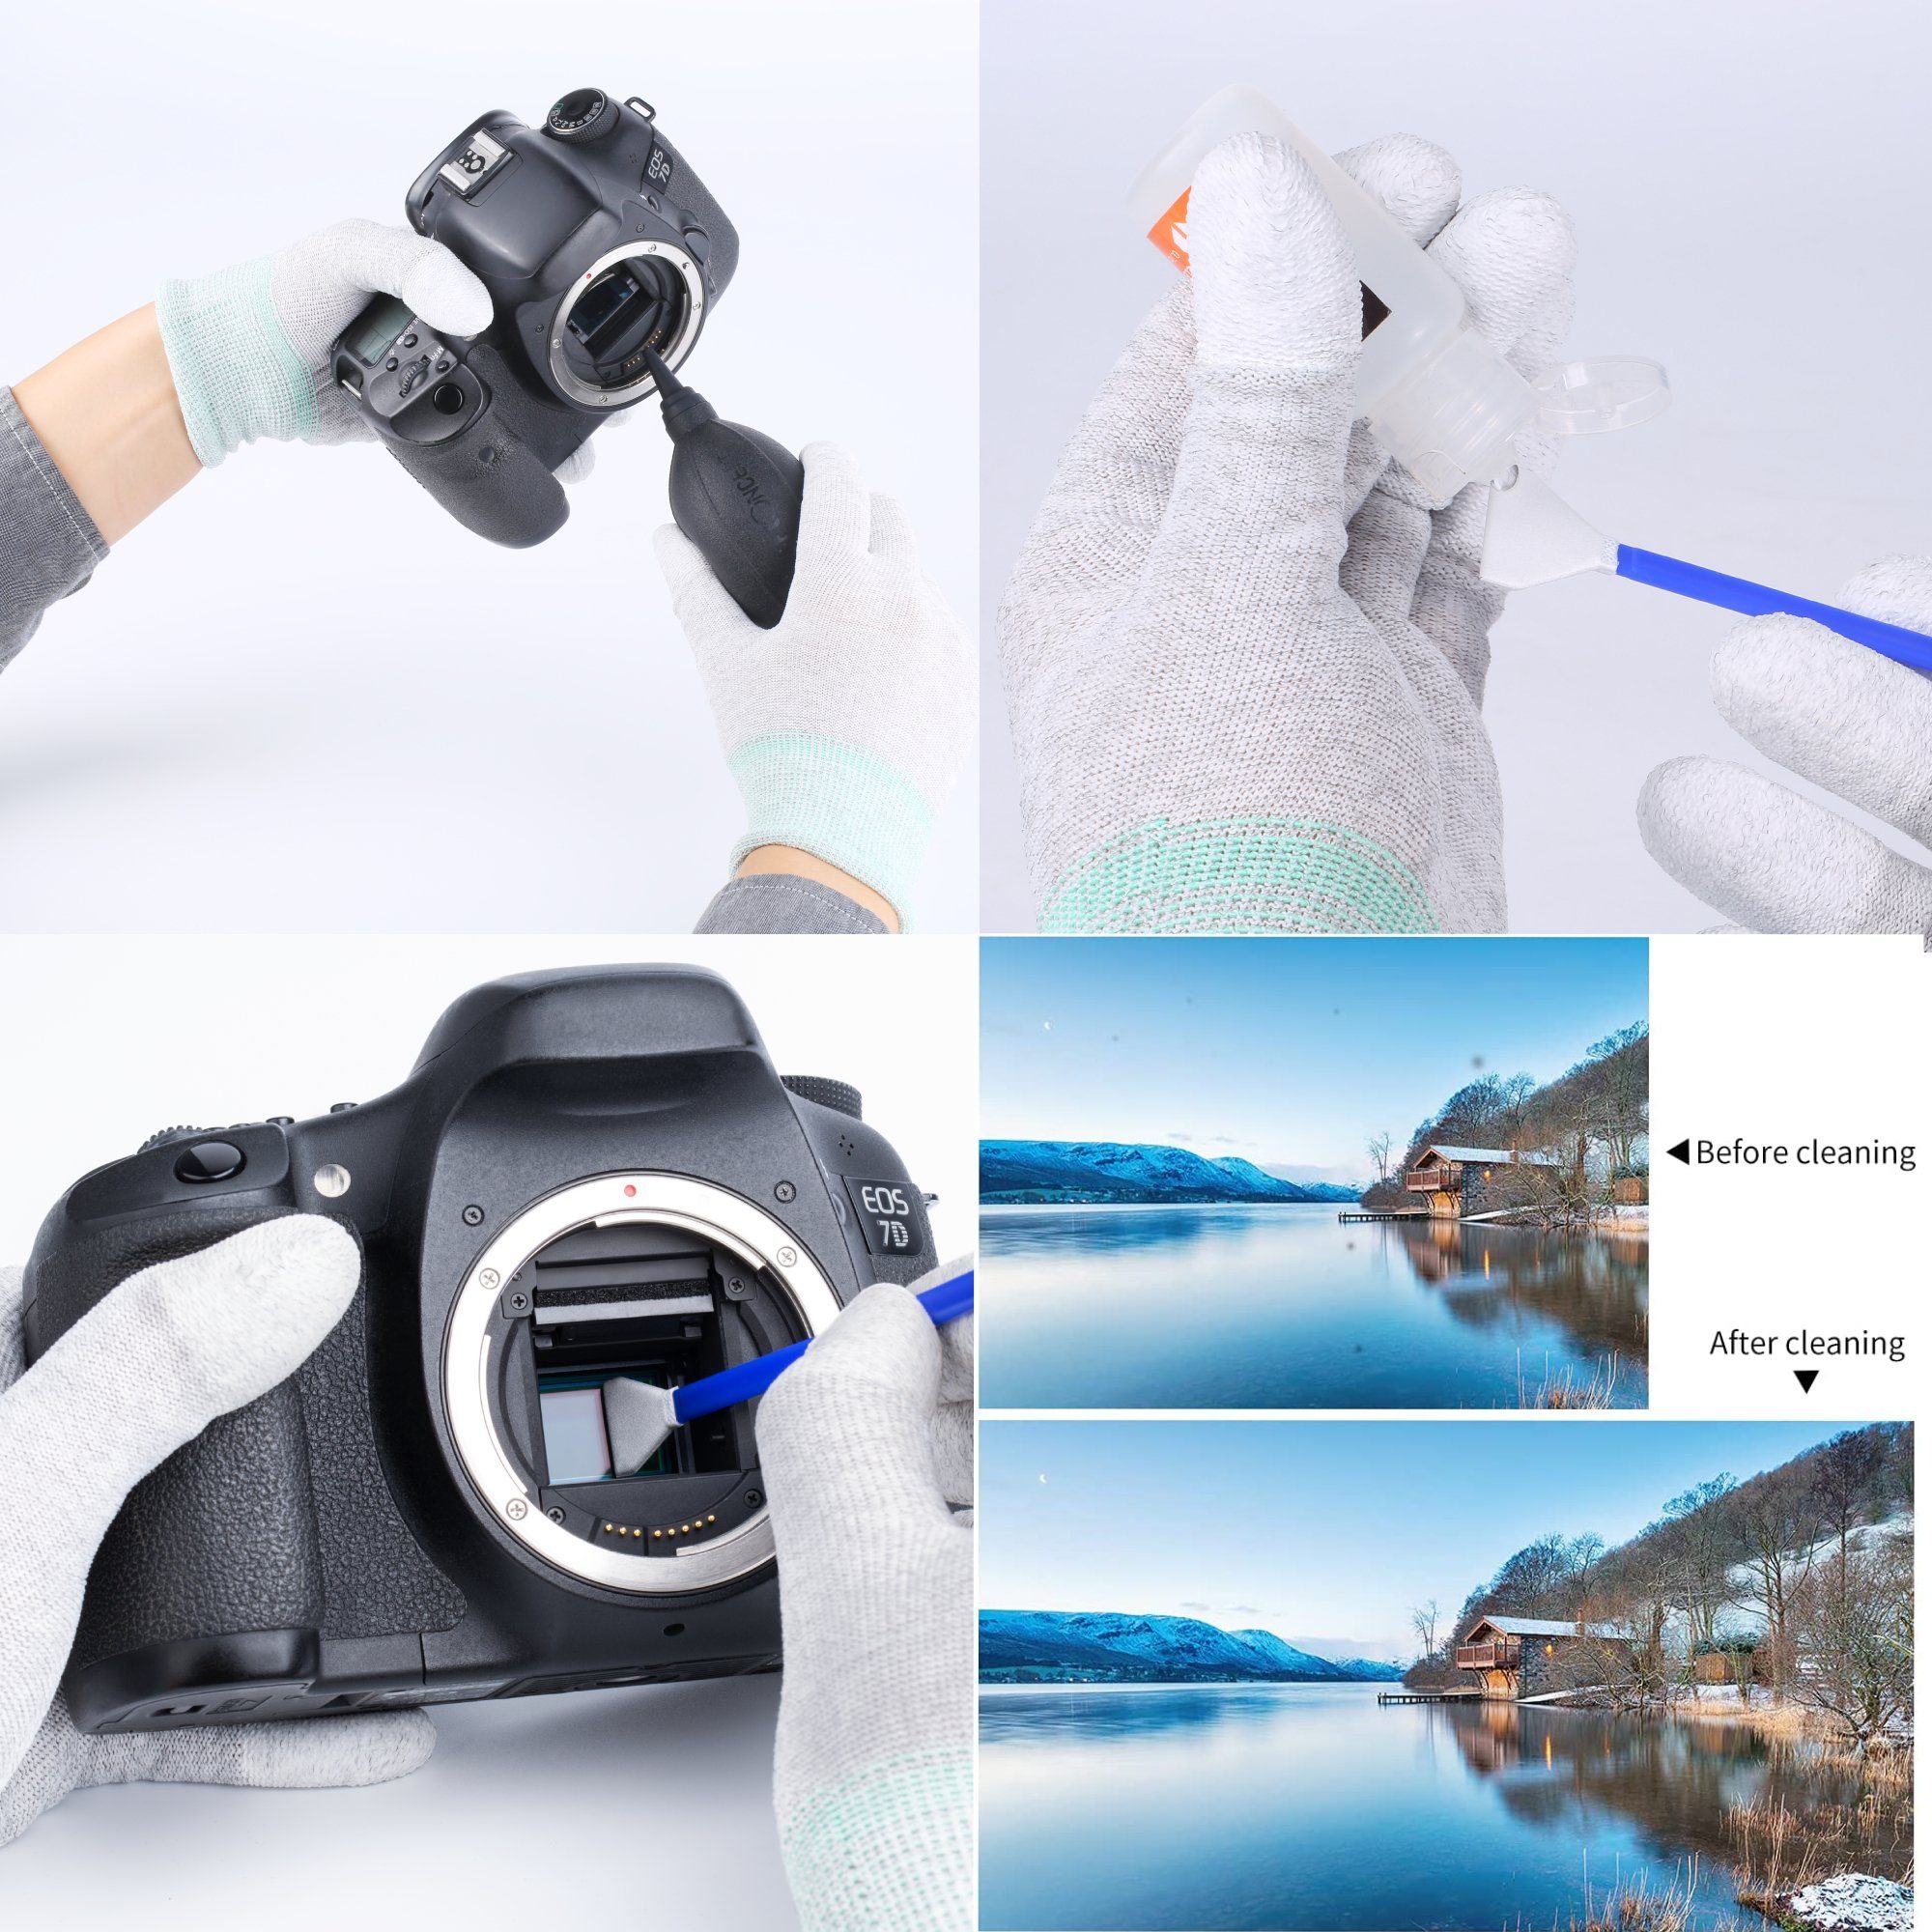 Minadax Kamerazubehör-Set KF Komplett Reinigung Sensor Full-Frame für SET Objektiv Sensor Kamera